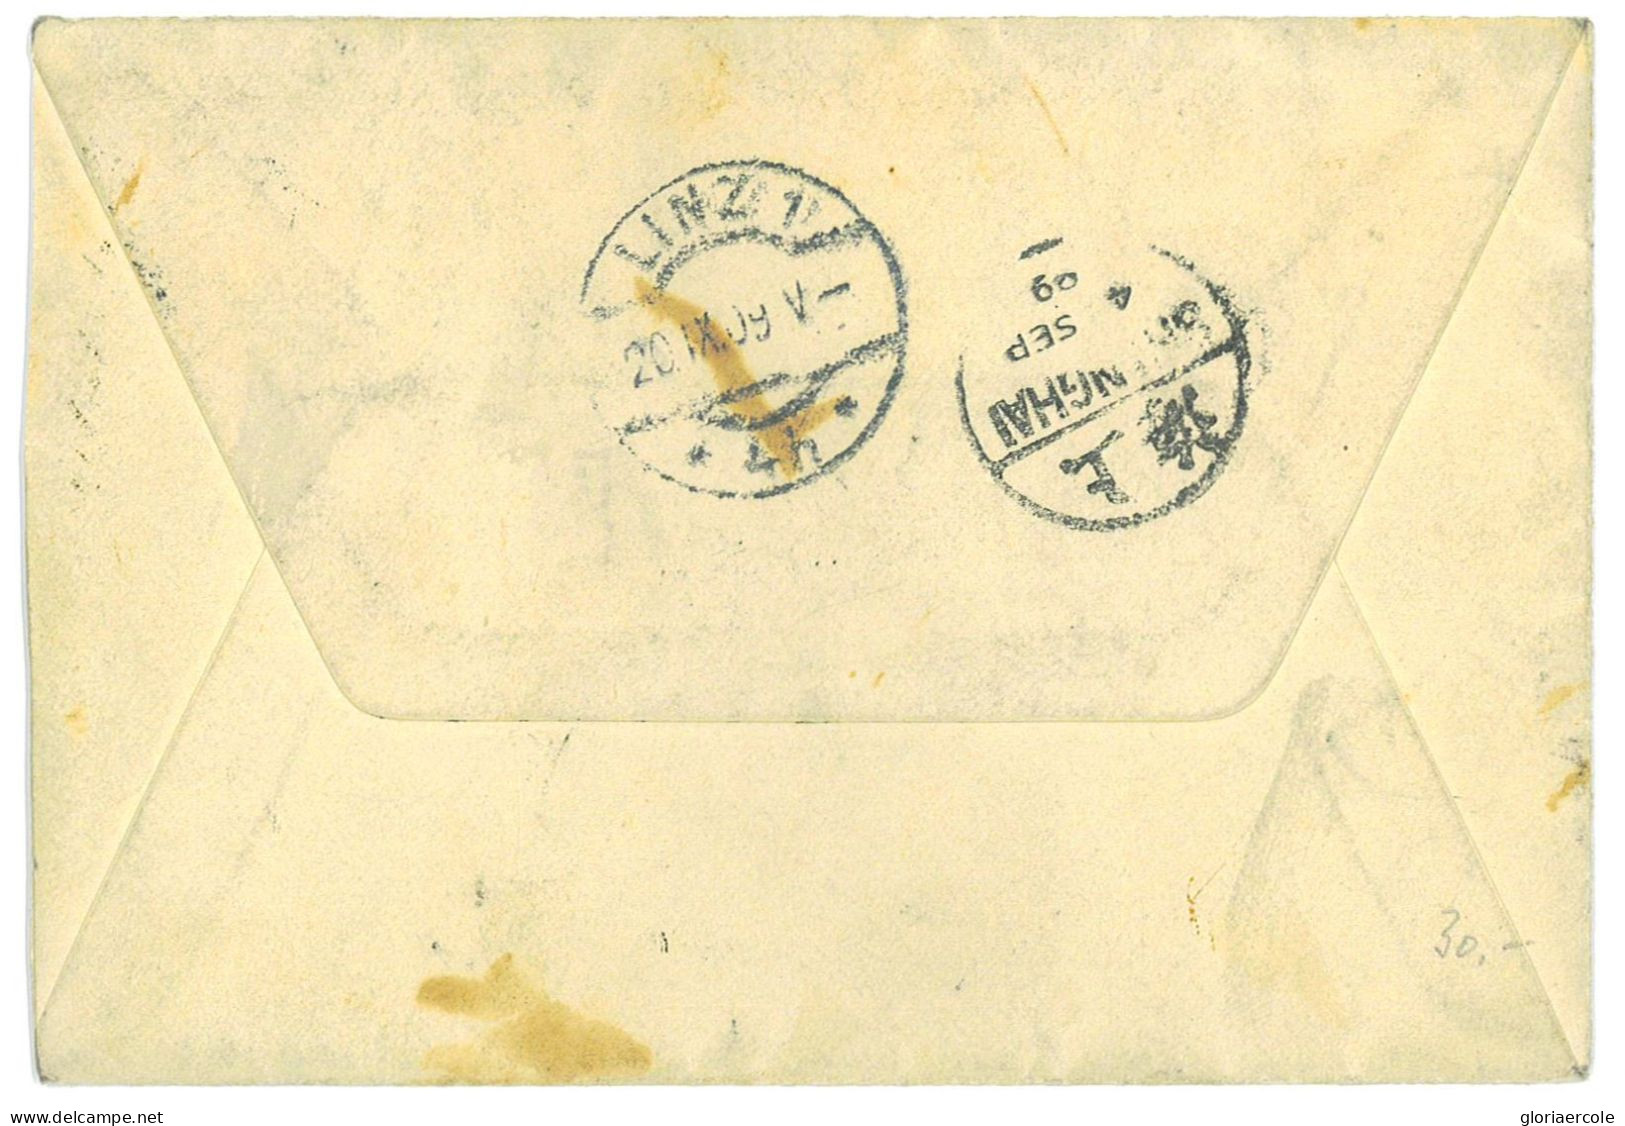 P2774 - 3 COLOUR ENVELOPPE FROM SHANGAI TO AUSTRIA 1909 - Briefe U. Dokumente